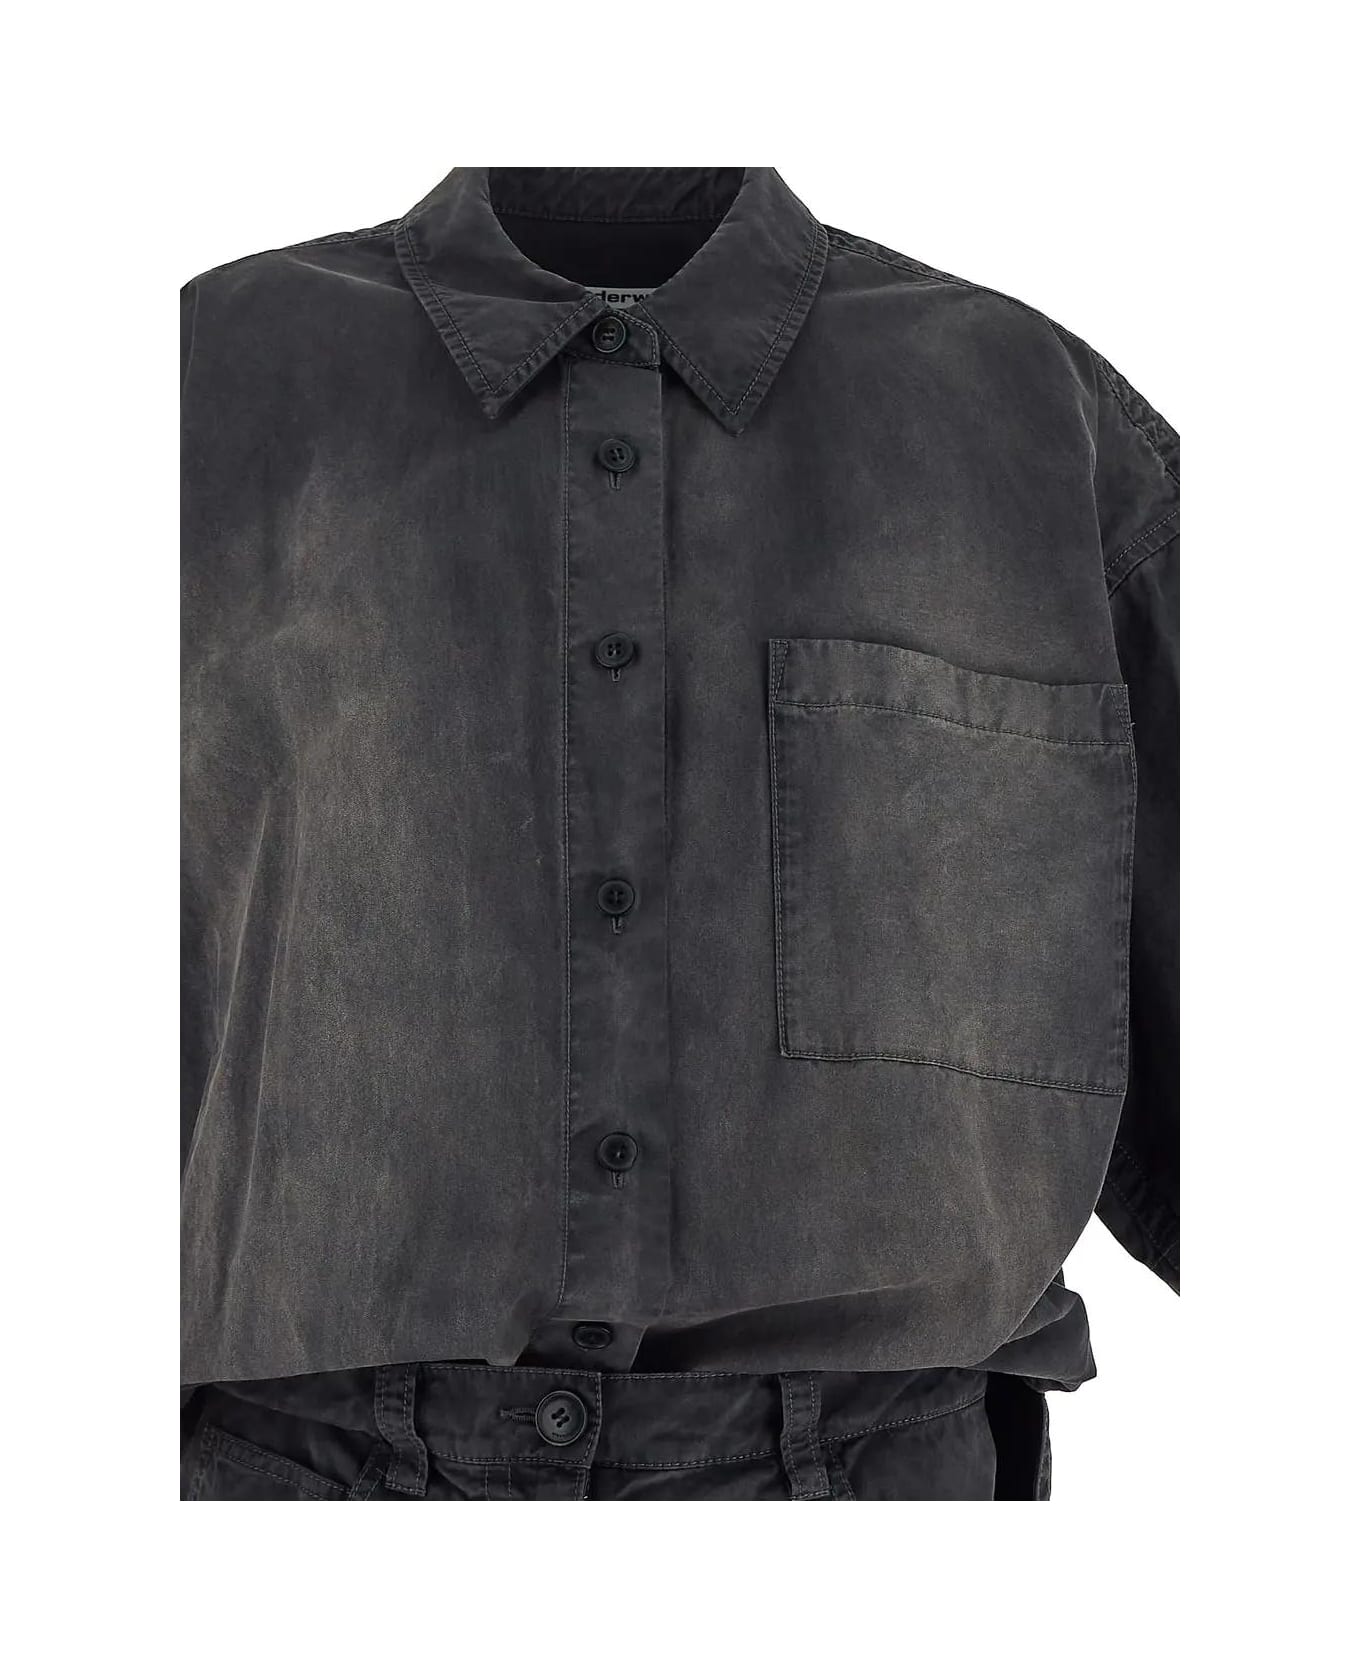 Alexander Wang Shirt Dress - A Washed Black Pearl シャツ